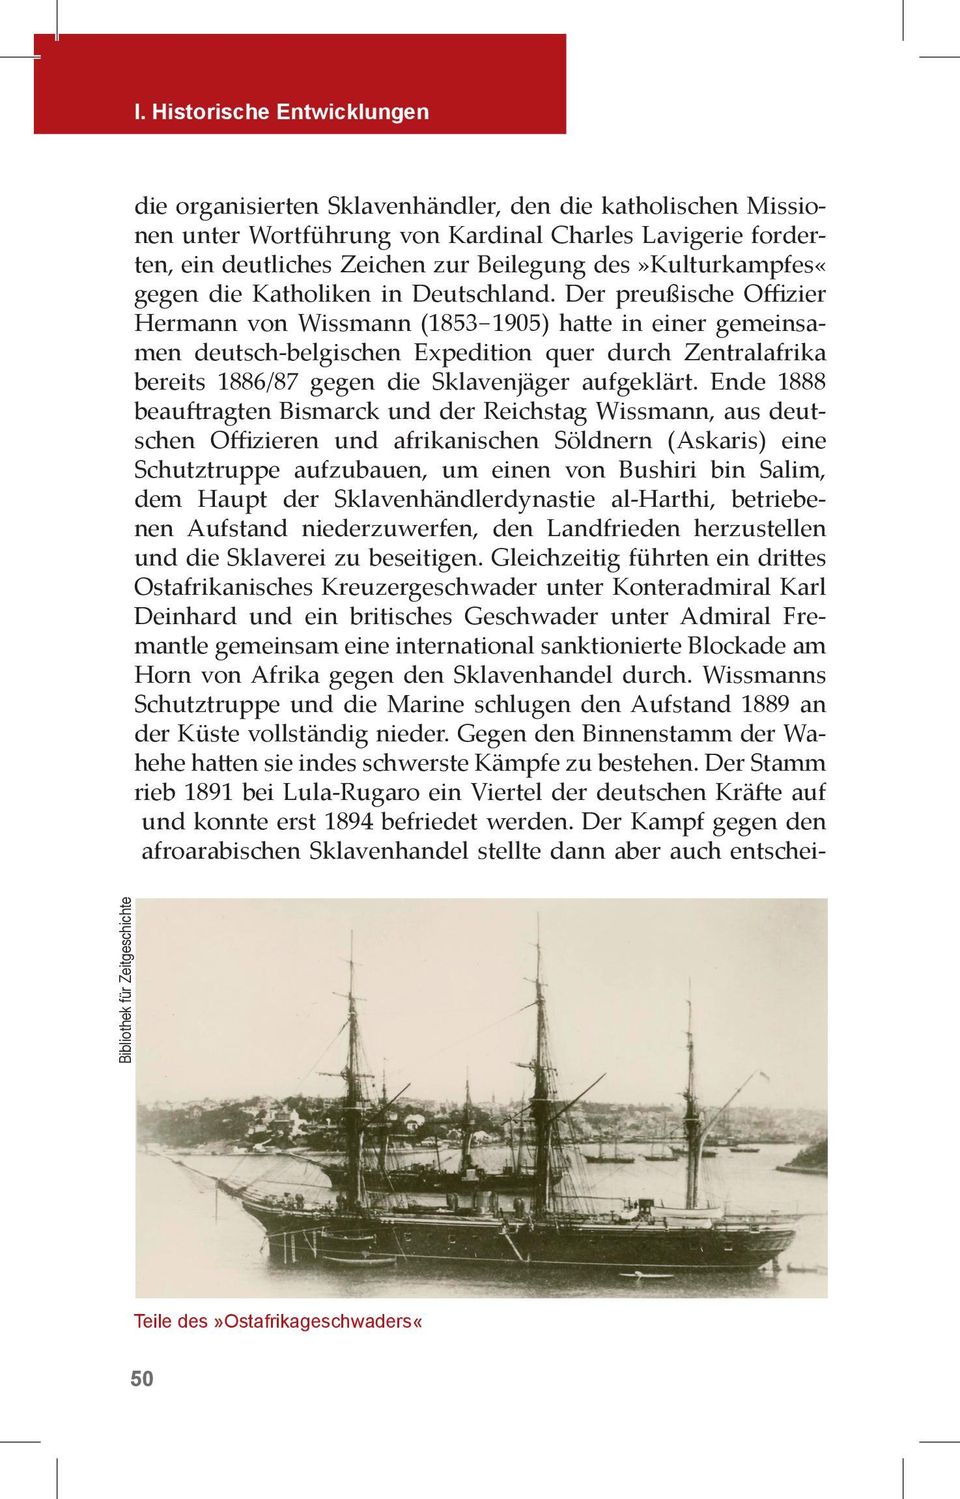 Der preußische Offizier Hermann von Wissmann (1853-1905) ha e in einer gemeinsamen deutsch-belgischen Expedition quer durch Zentralafrika bereits 1886/87 gegen die Sklavenjäger aufgeklärt.